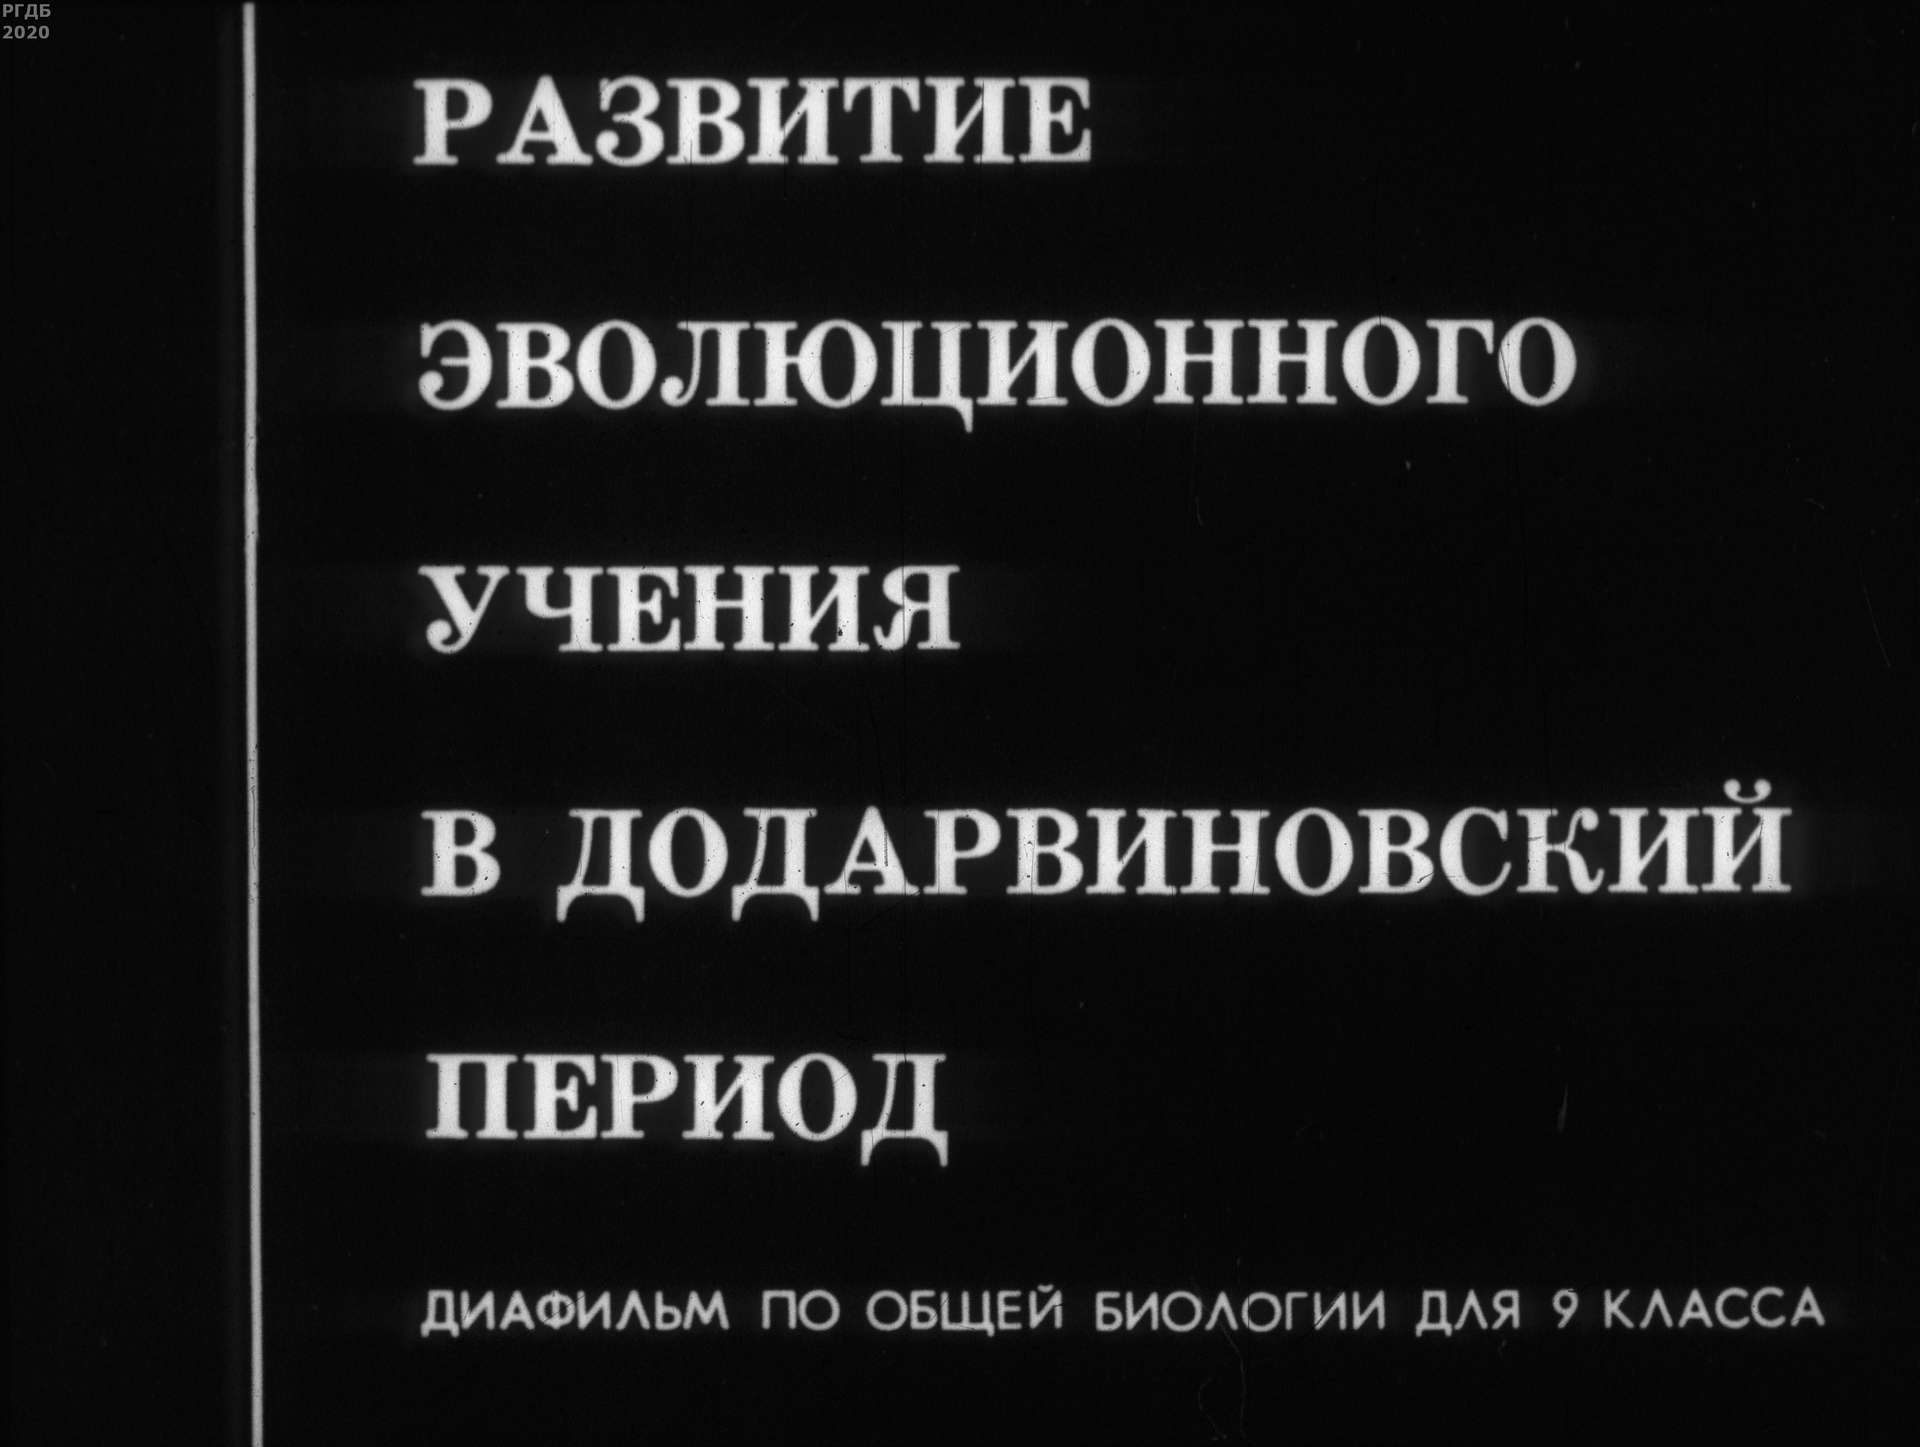 Павлова Н. Р. - Развитие эволюционного учения в додарвиновский период - 1975